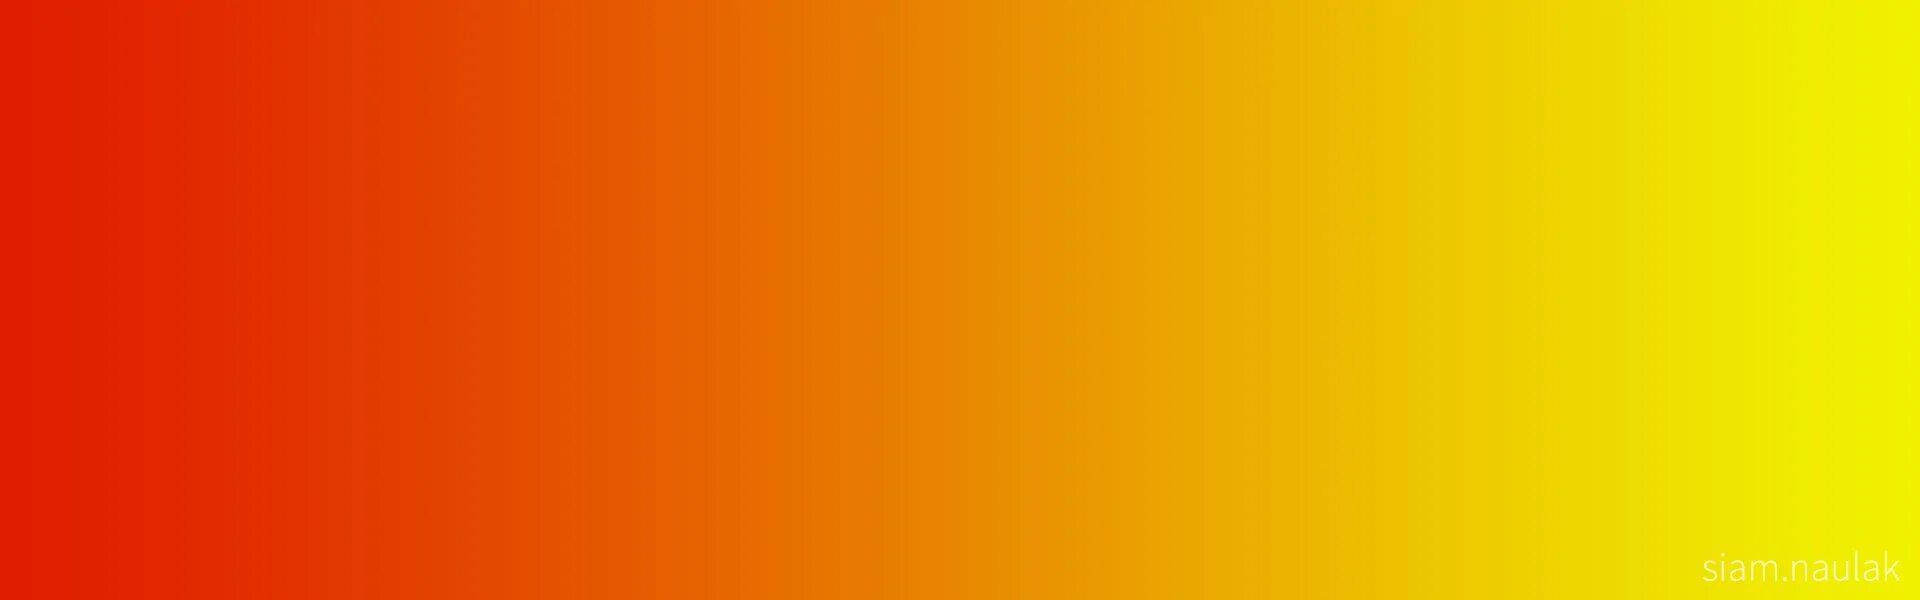 Оранжевый 1 1 20 август 2021. Красно-оранжевый цвет. Желто красный цвет. Желто-оранжевый цвет. Оранжевый градиент.